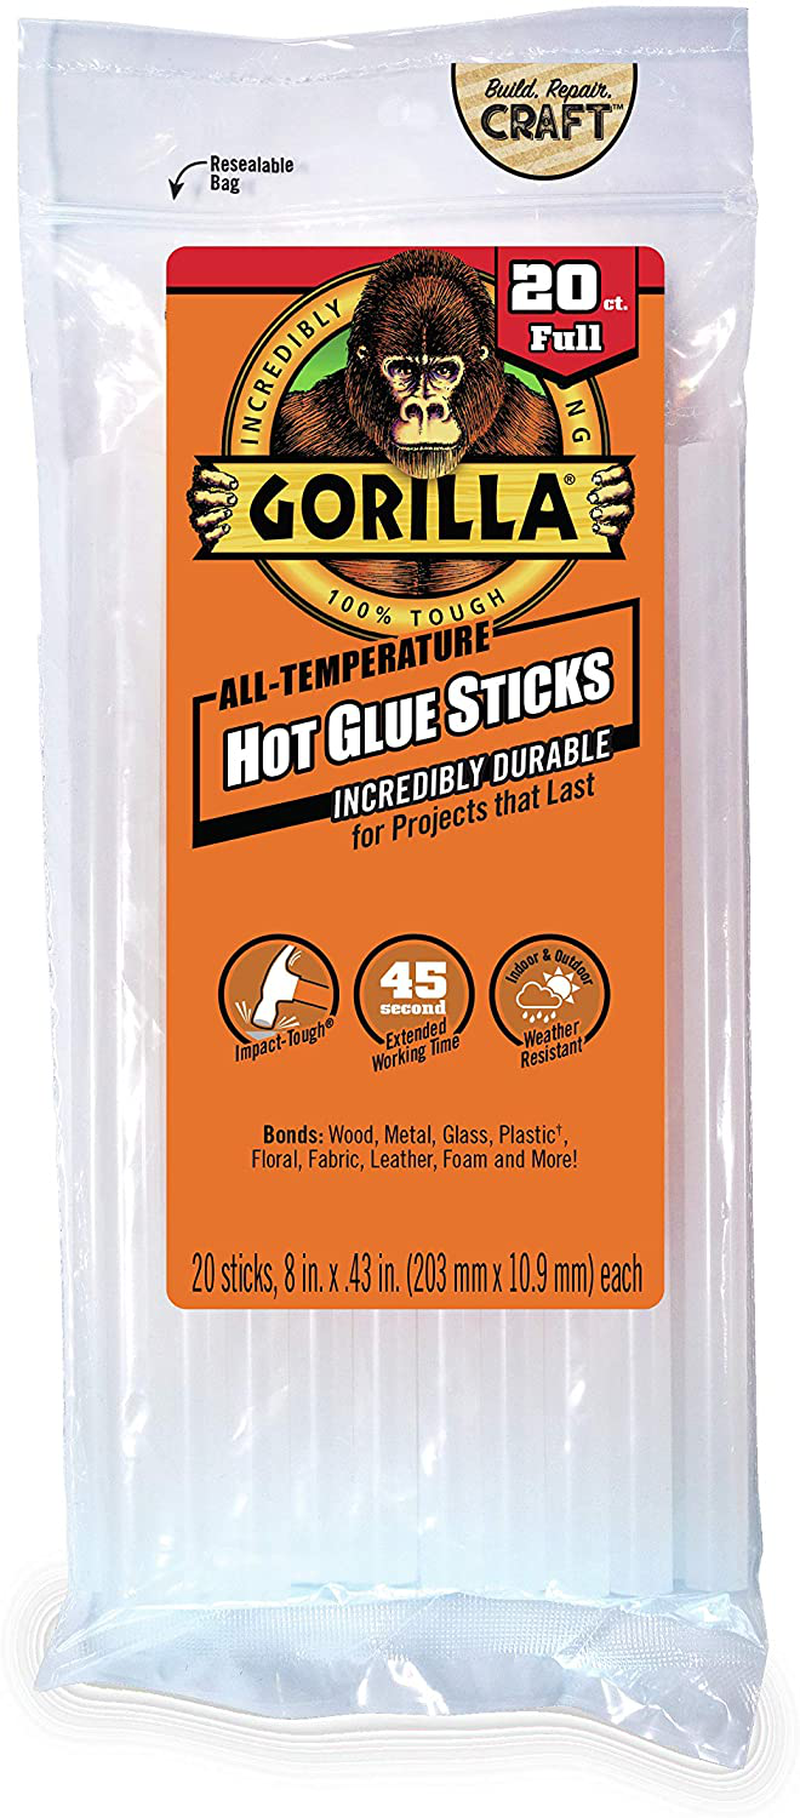 Gorilla Dual Temp Mini Hot Glue Gun Kit with Hot Glue Sticks